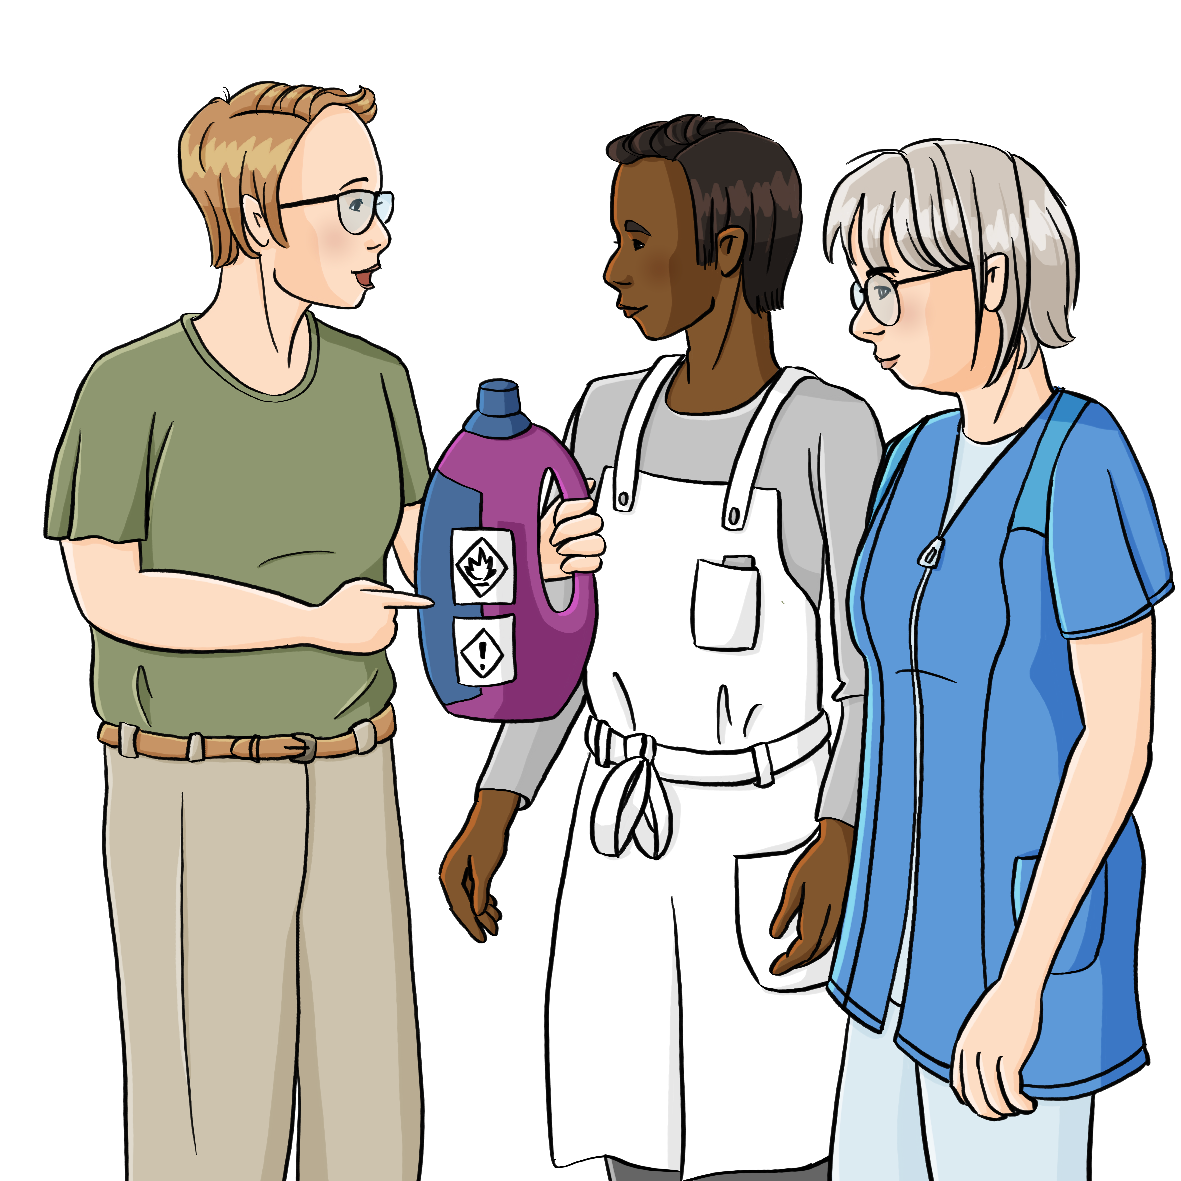 Eine Frau hält eine Plastikflasche mit Gefahrensymbolen in der Hand. Sie zeigt darauf und redet. Neben ihr stehen ein Mann in weißer Schürze und eine Frau in blauem Kittel.